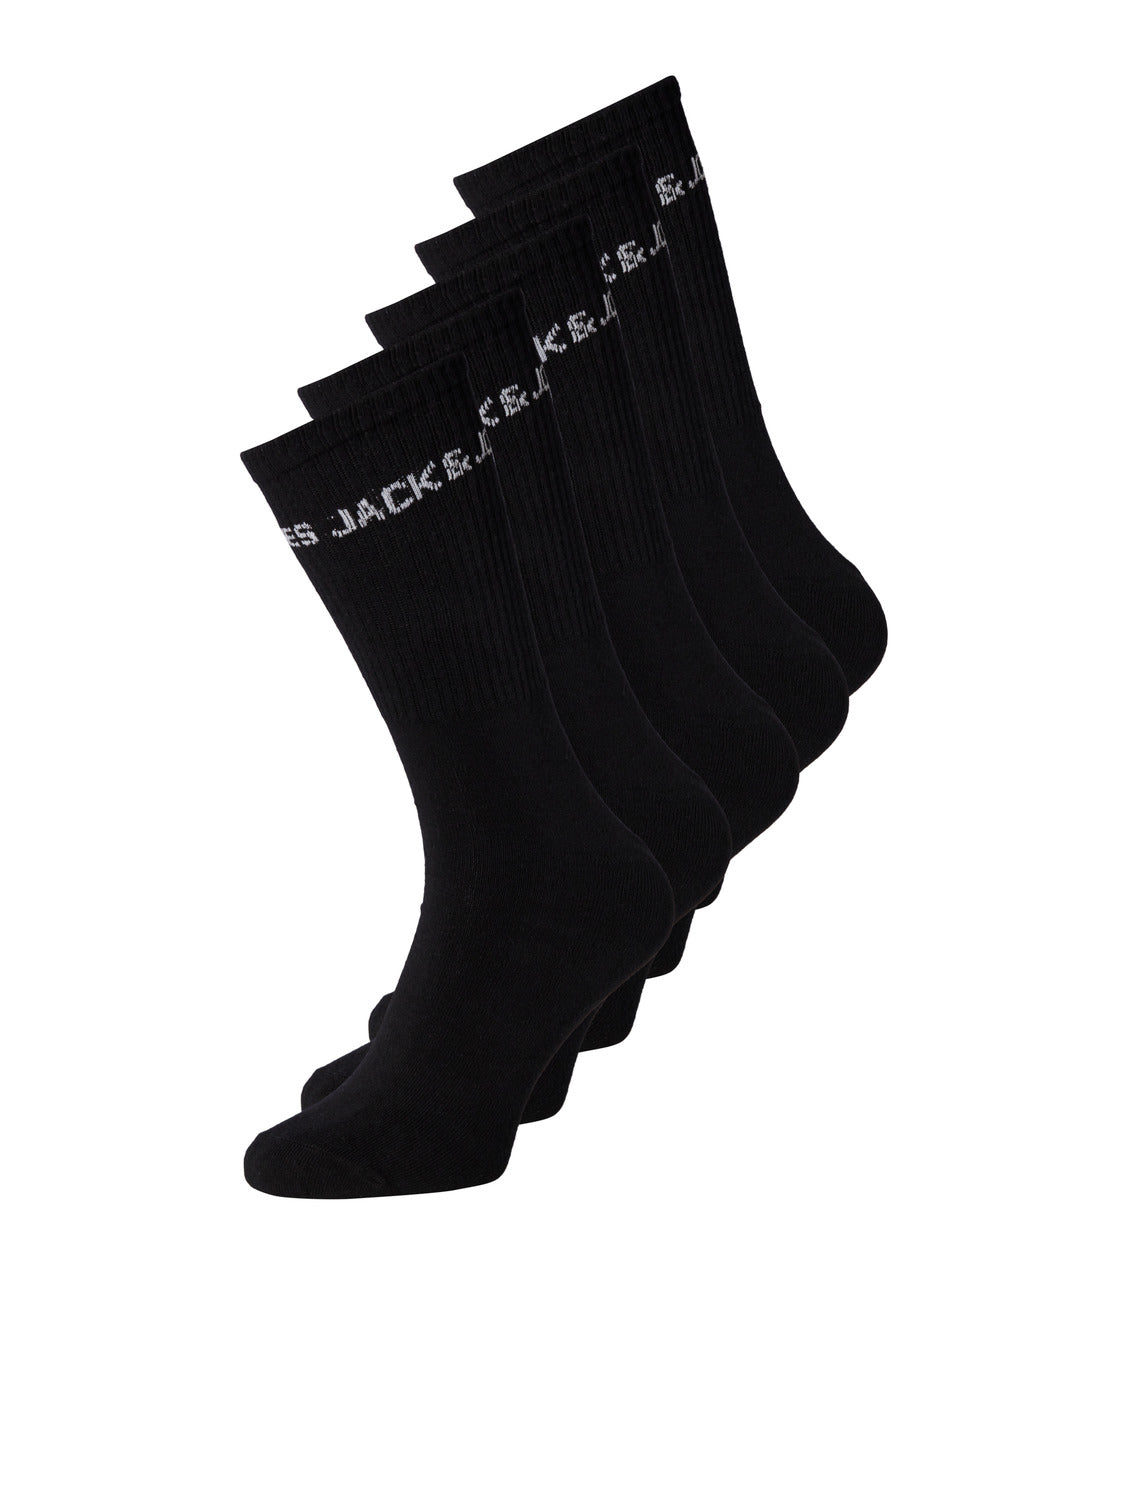 JACBASIC 5 Pack Socks - Black